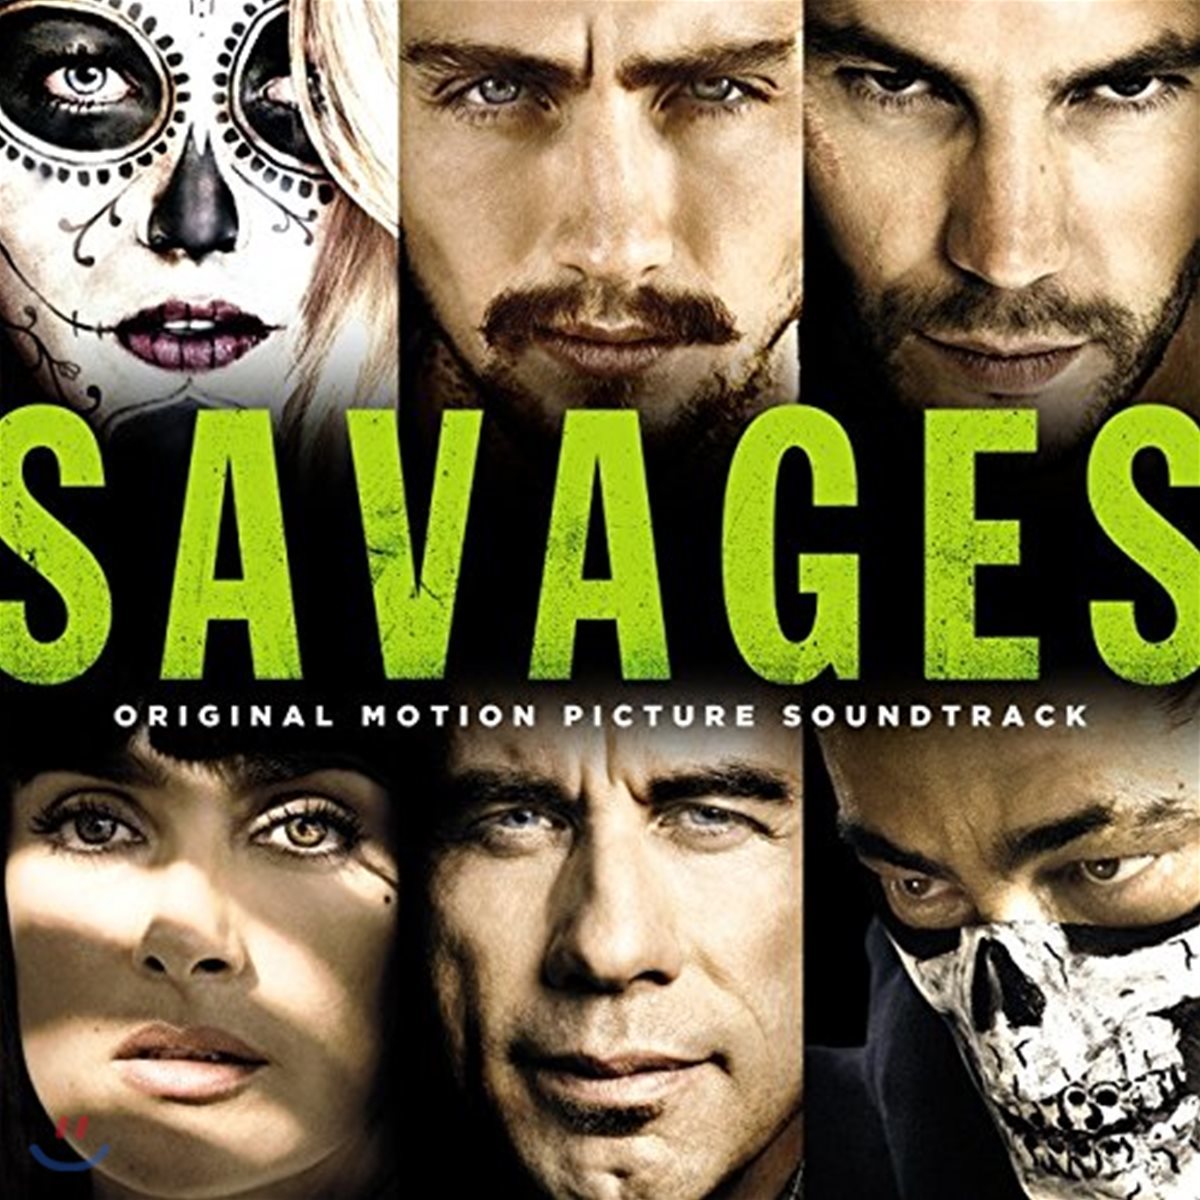 세비지스: 파괴자들 영화음악 (Savages OST)